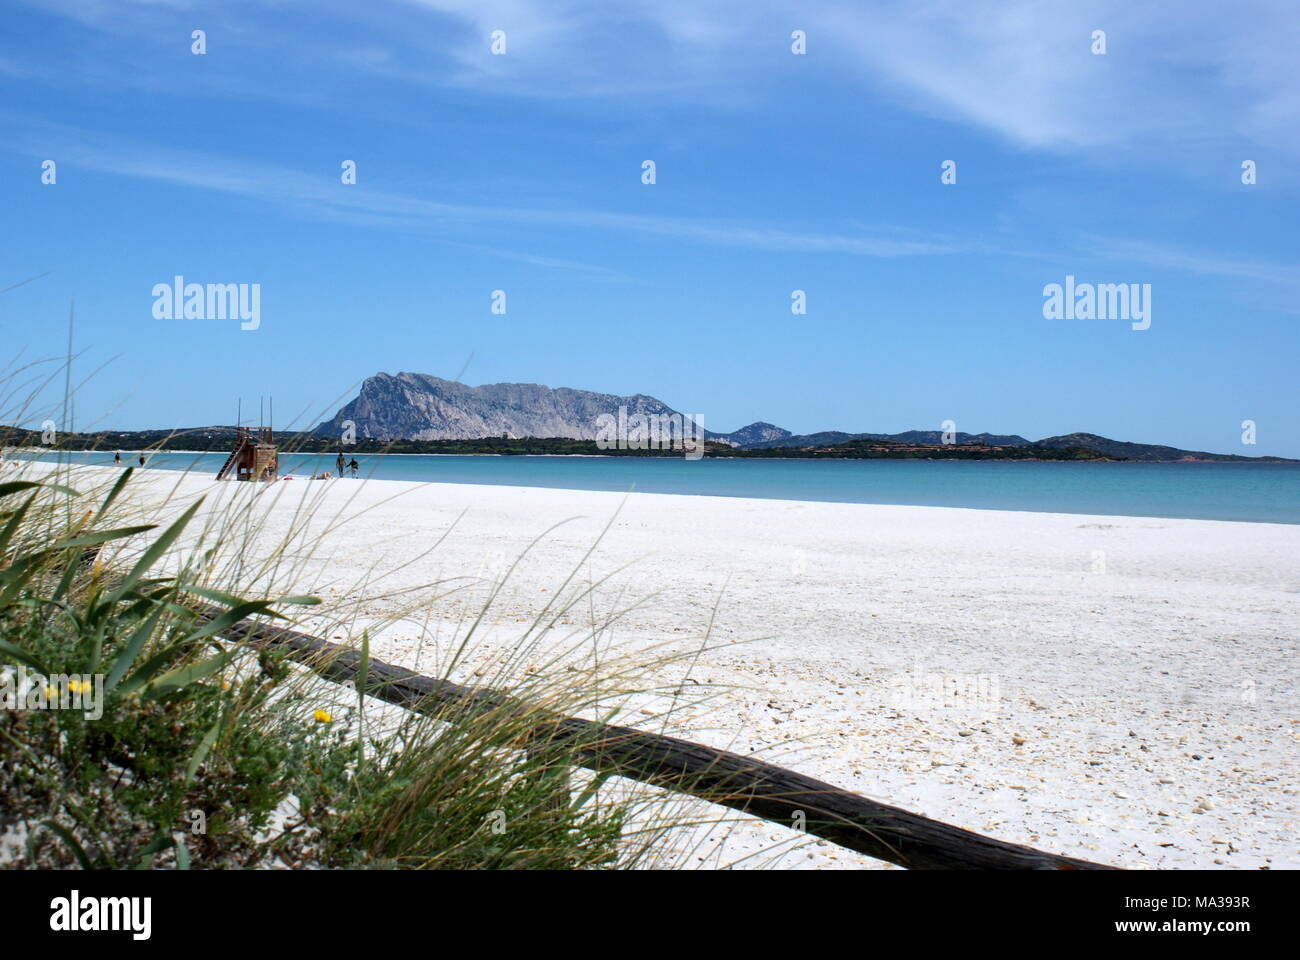 La plage de la Cinta, San Teodoro, Sardaigne, Italie Banque D'Images